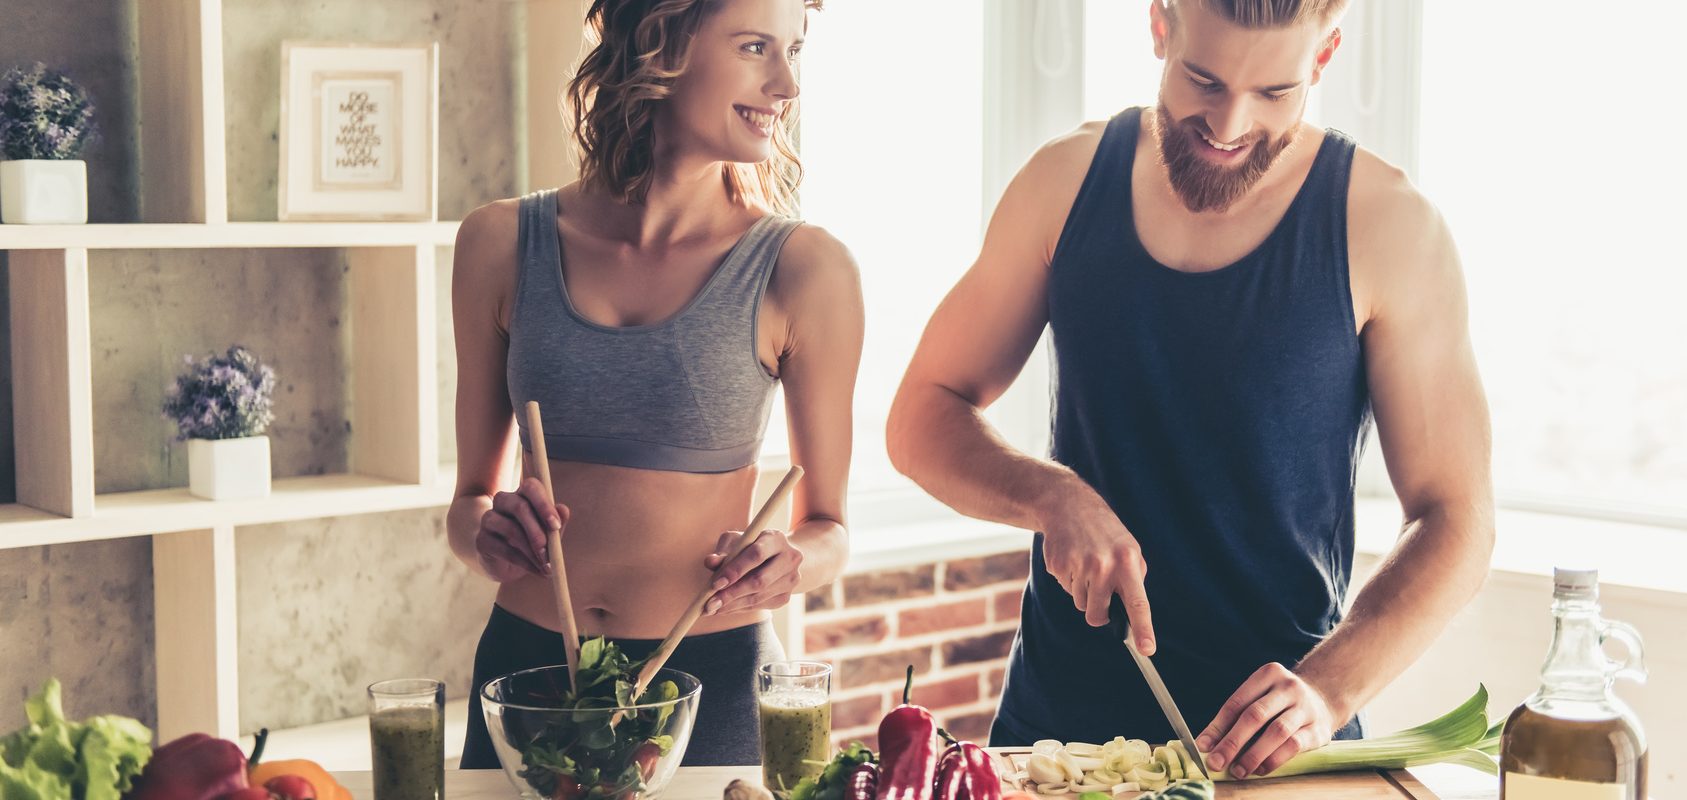 Posiłek przed treningiem i posiłek potreningowy - jak powinny wyglądać? Kobieta i mężczyzna przygotowują jedzenie w kuchni po treningu.